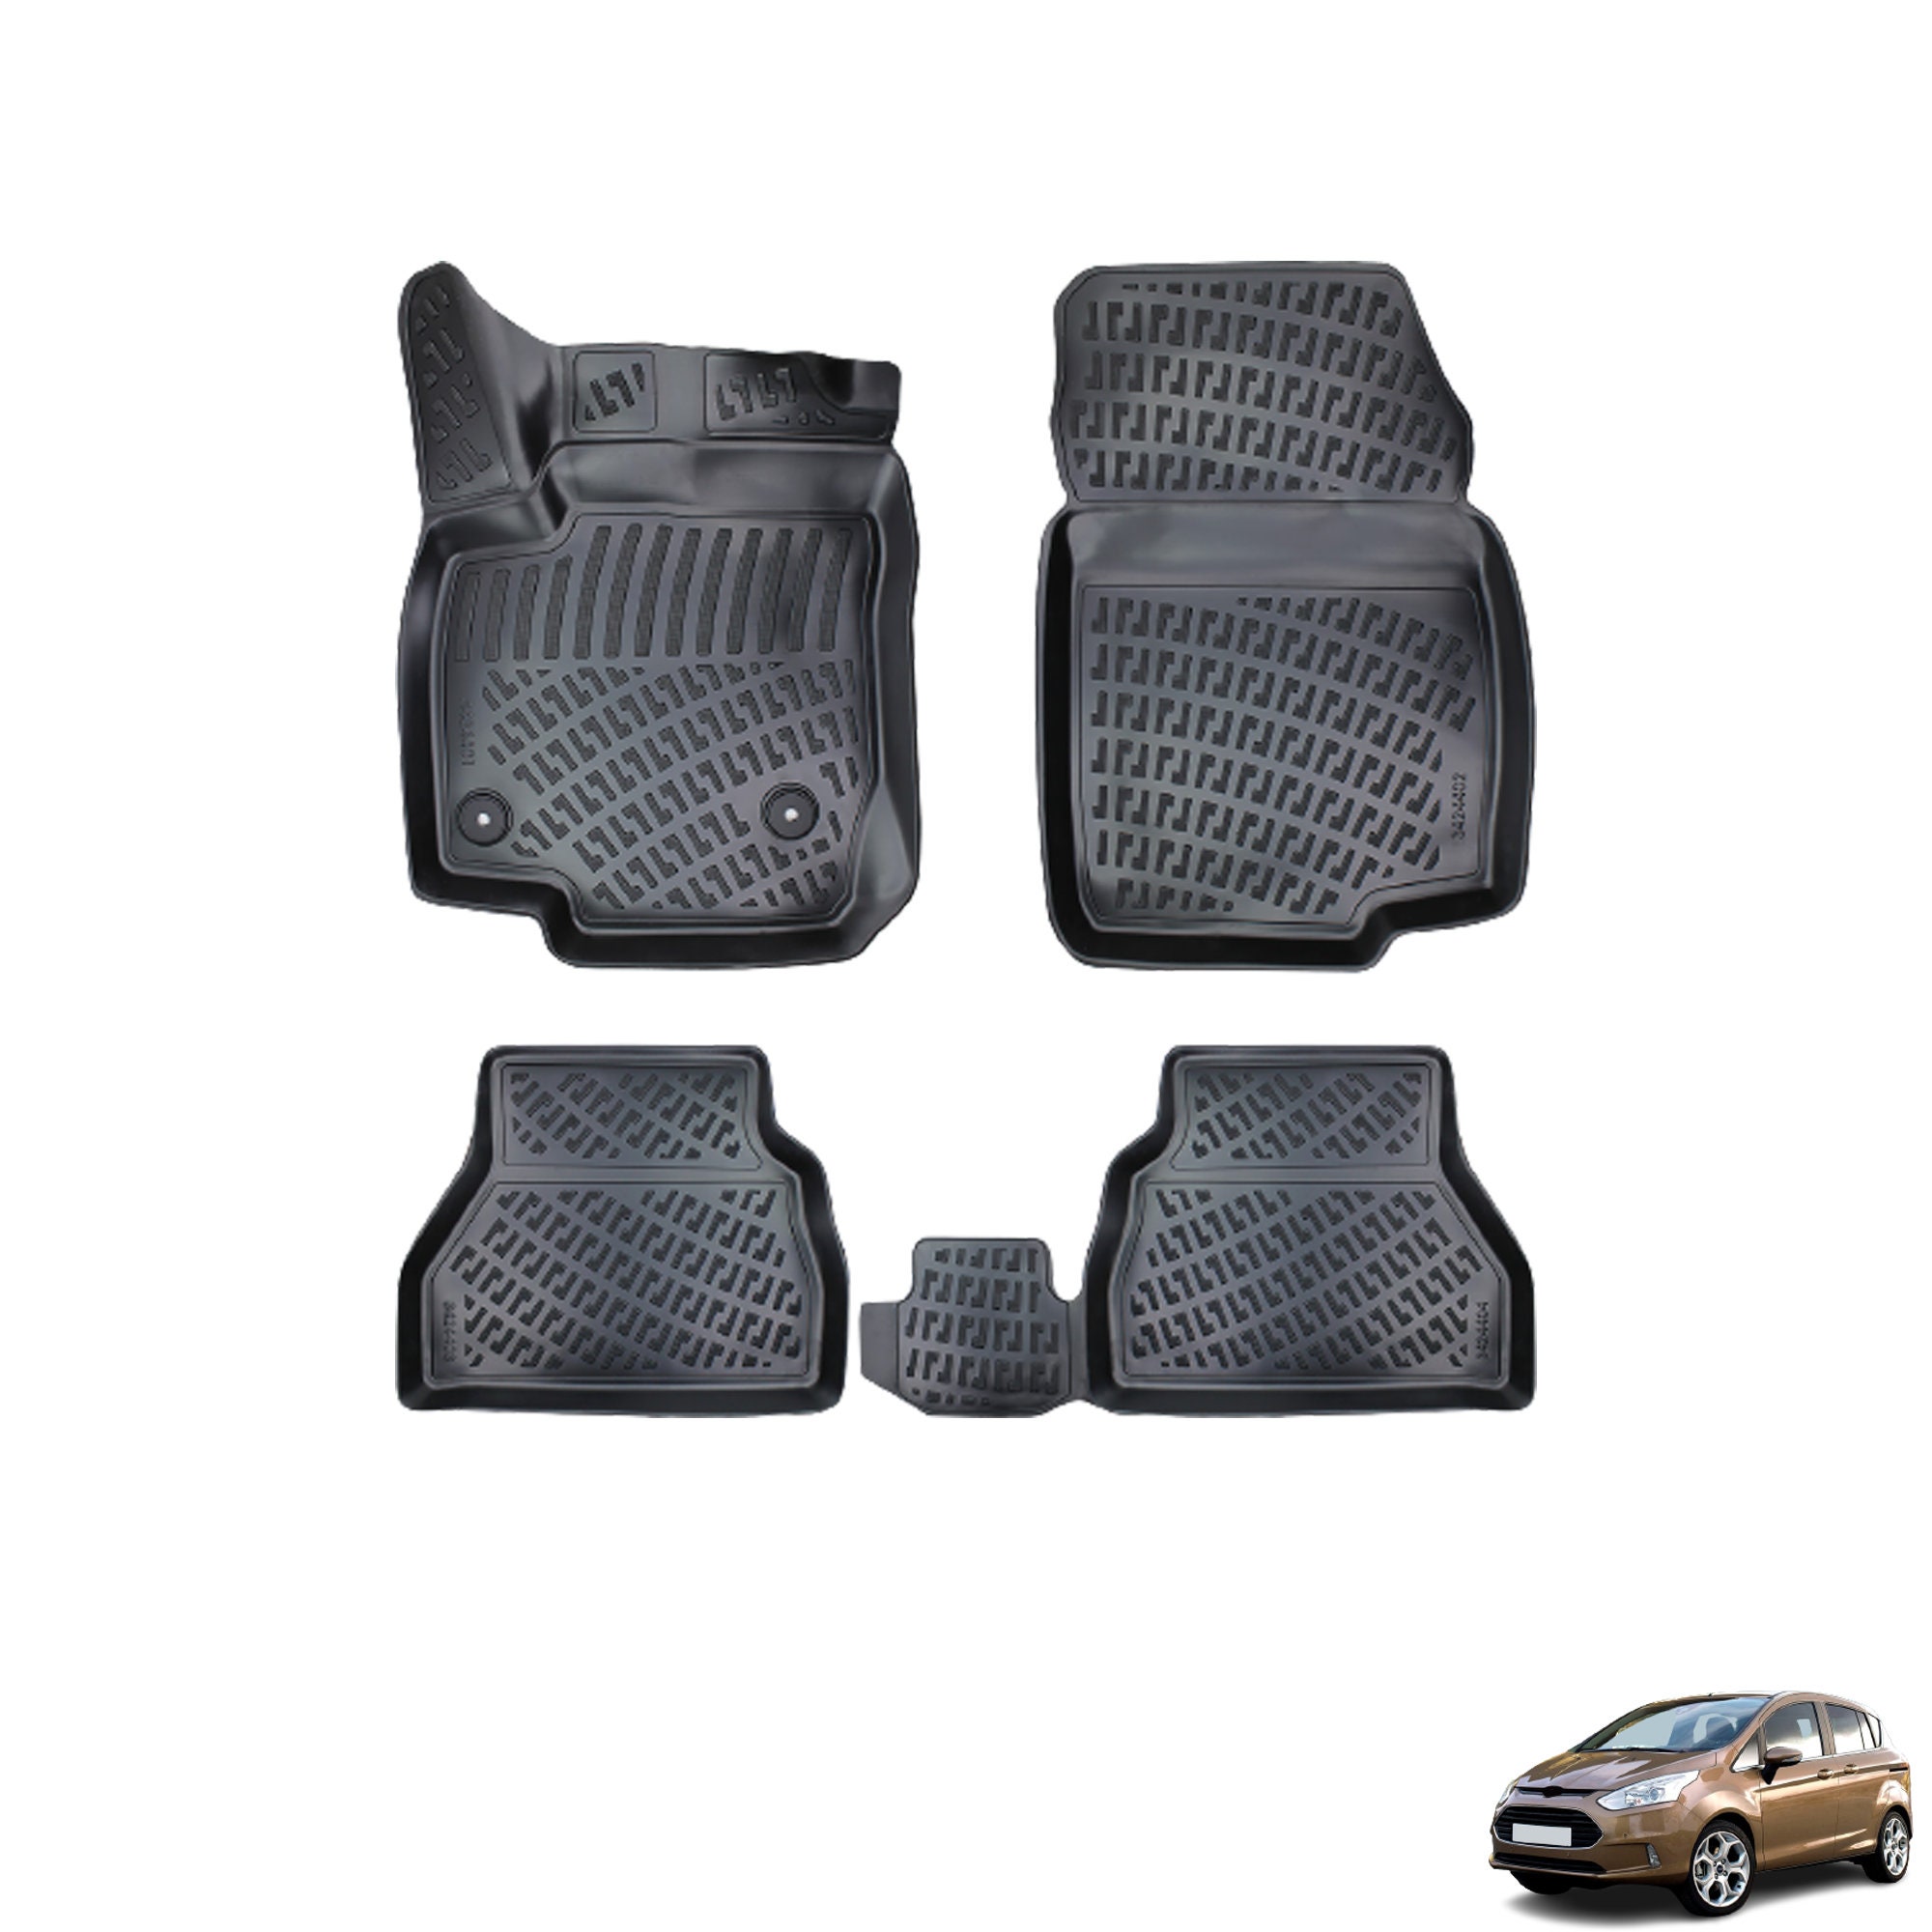 Alfombrillas de repuesto para Ford Focus 2012-2018, revestimiento  resistente, color negro, ajuste personalizado, protección para todo tipo de  clima